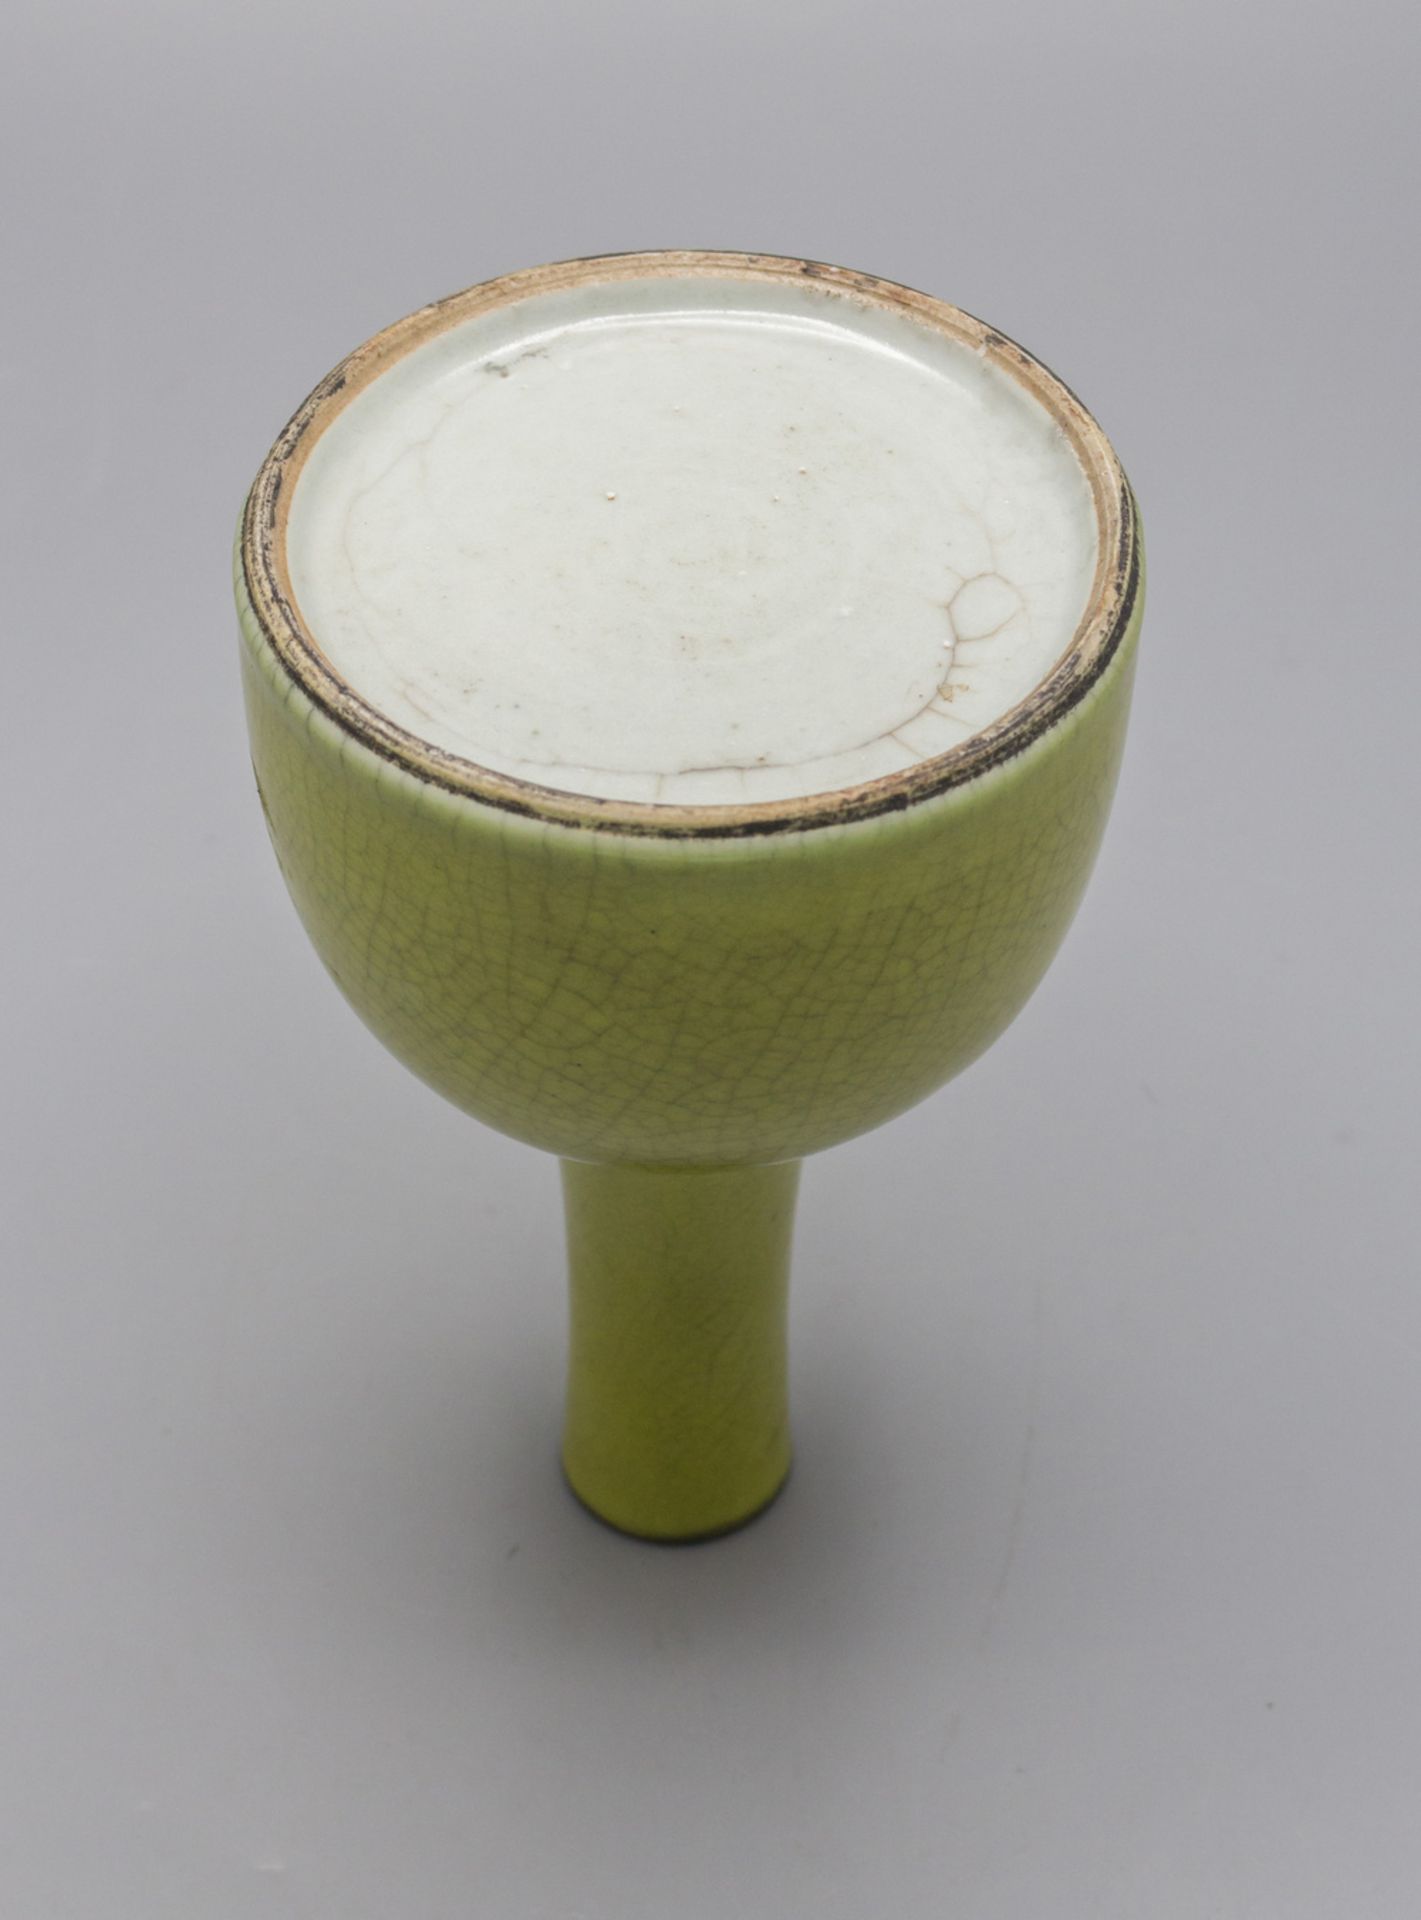 Apfelgrüne Vase / An apple green glazed vase, China, 19. Jh. - Bild 3 aus 3